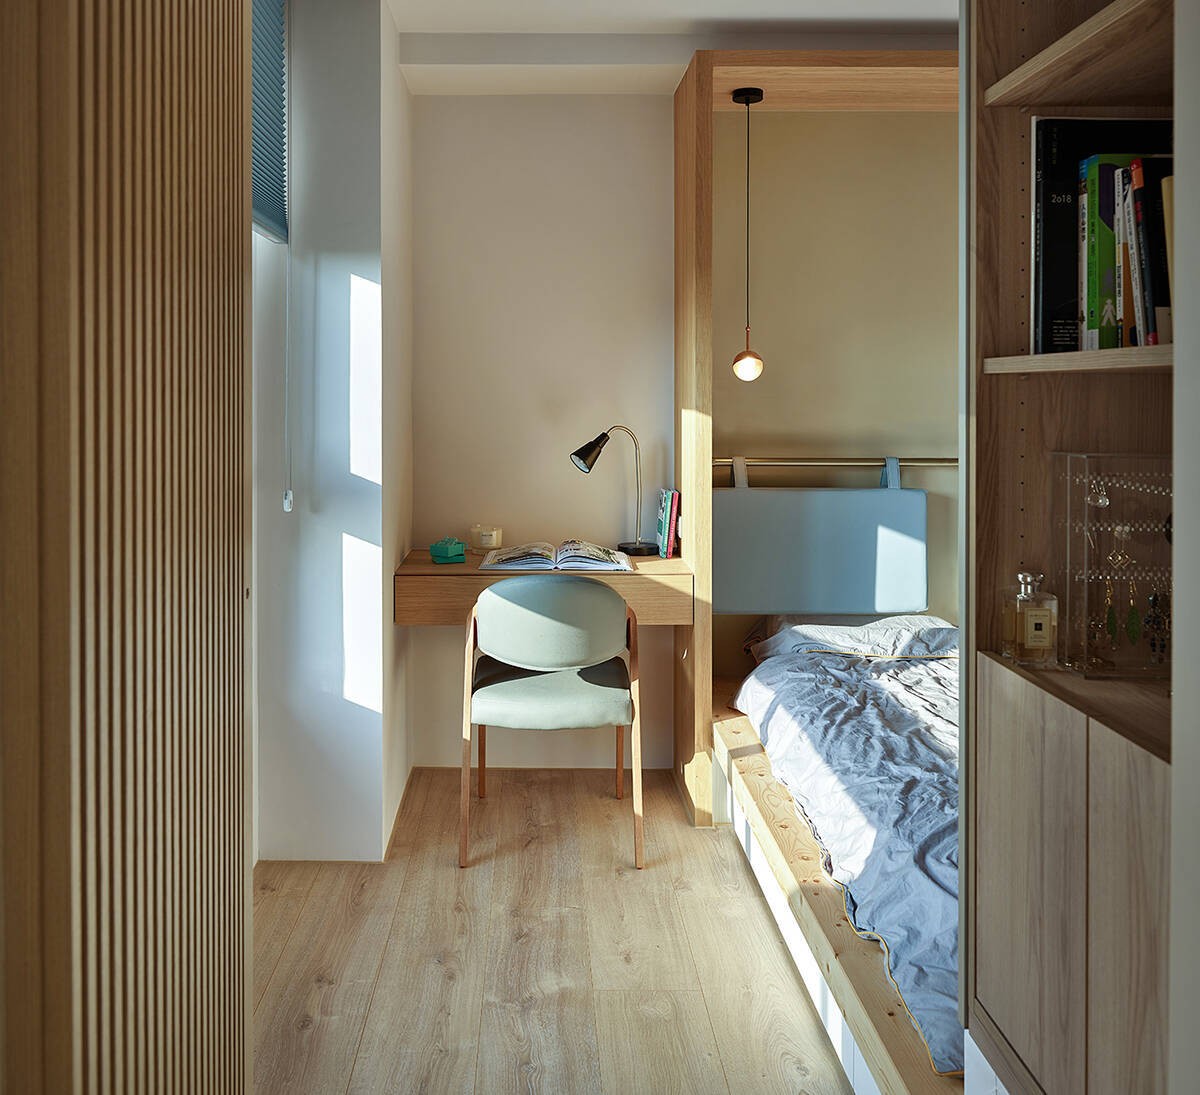 
Phòng ngủ tuy nhỏ nhưng đầy đủ tiện nghi, được thiết kế tối giản, gọn gàng
